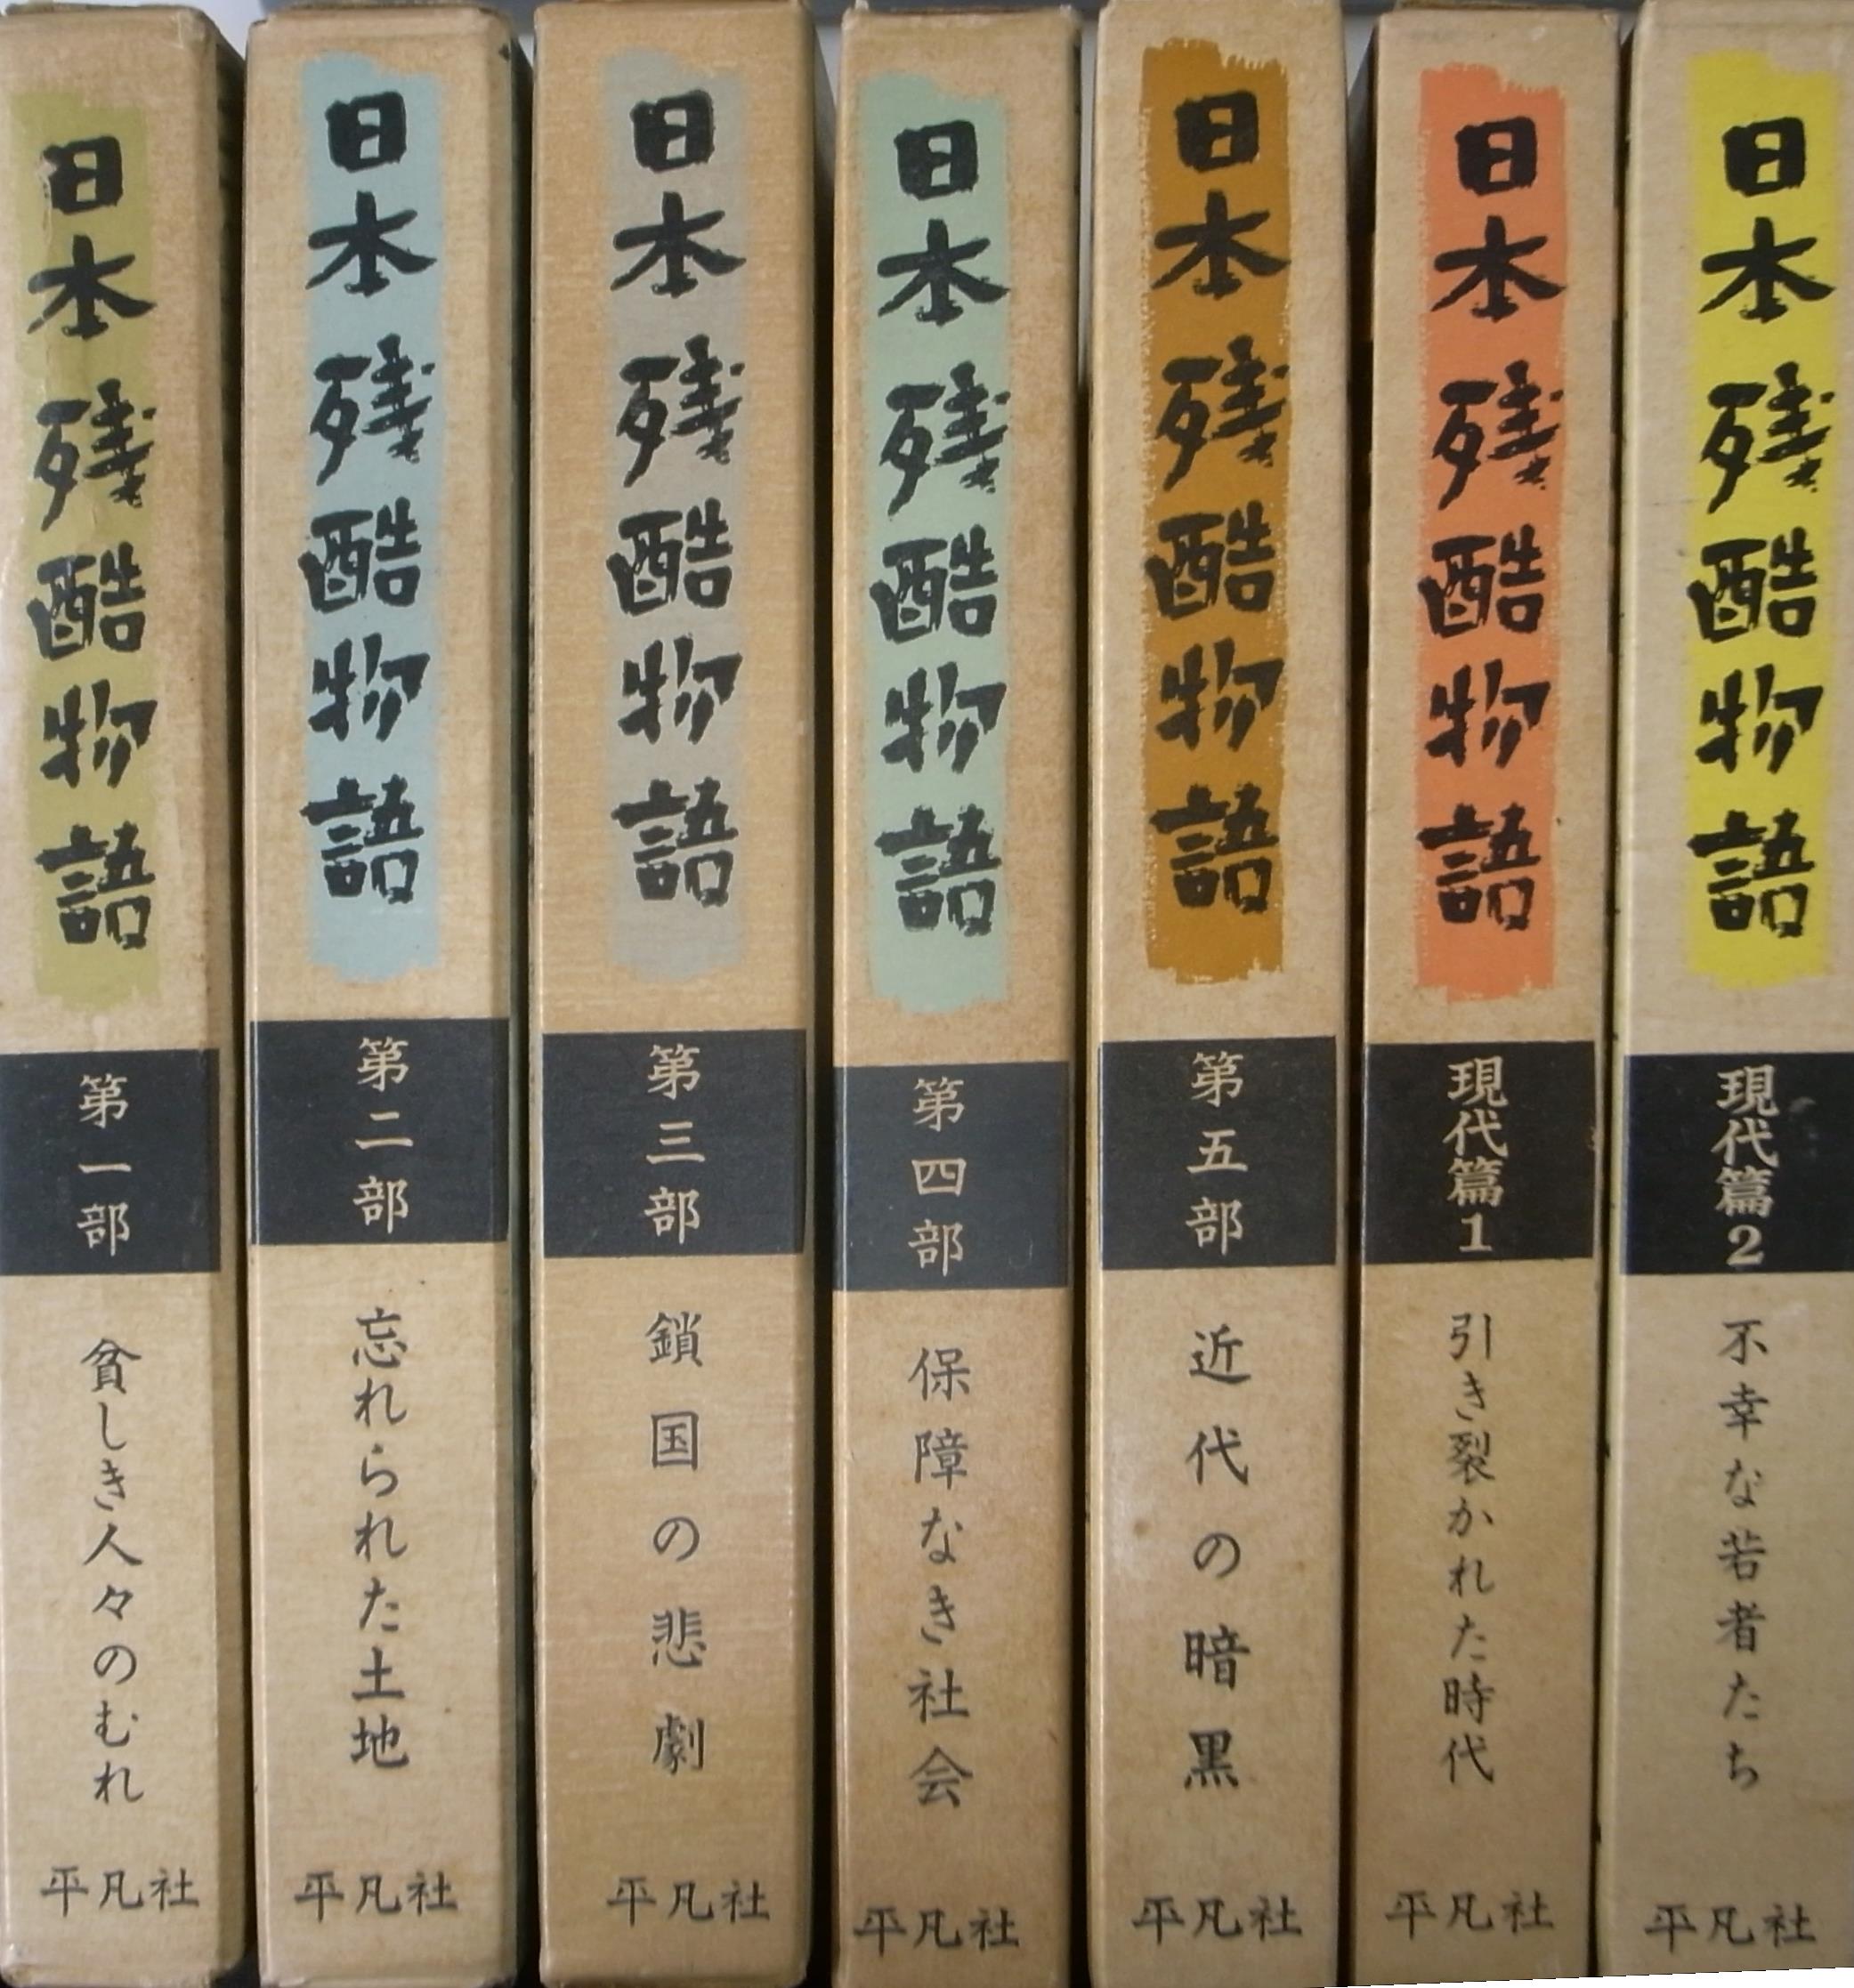 日本残酷物語 平凡社版 ７冊セット 貧しき人々の群むれ 忘れられた土地 